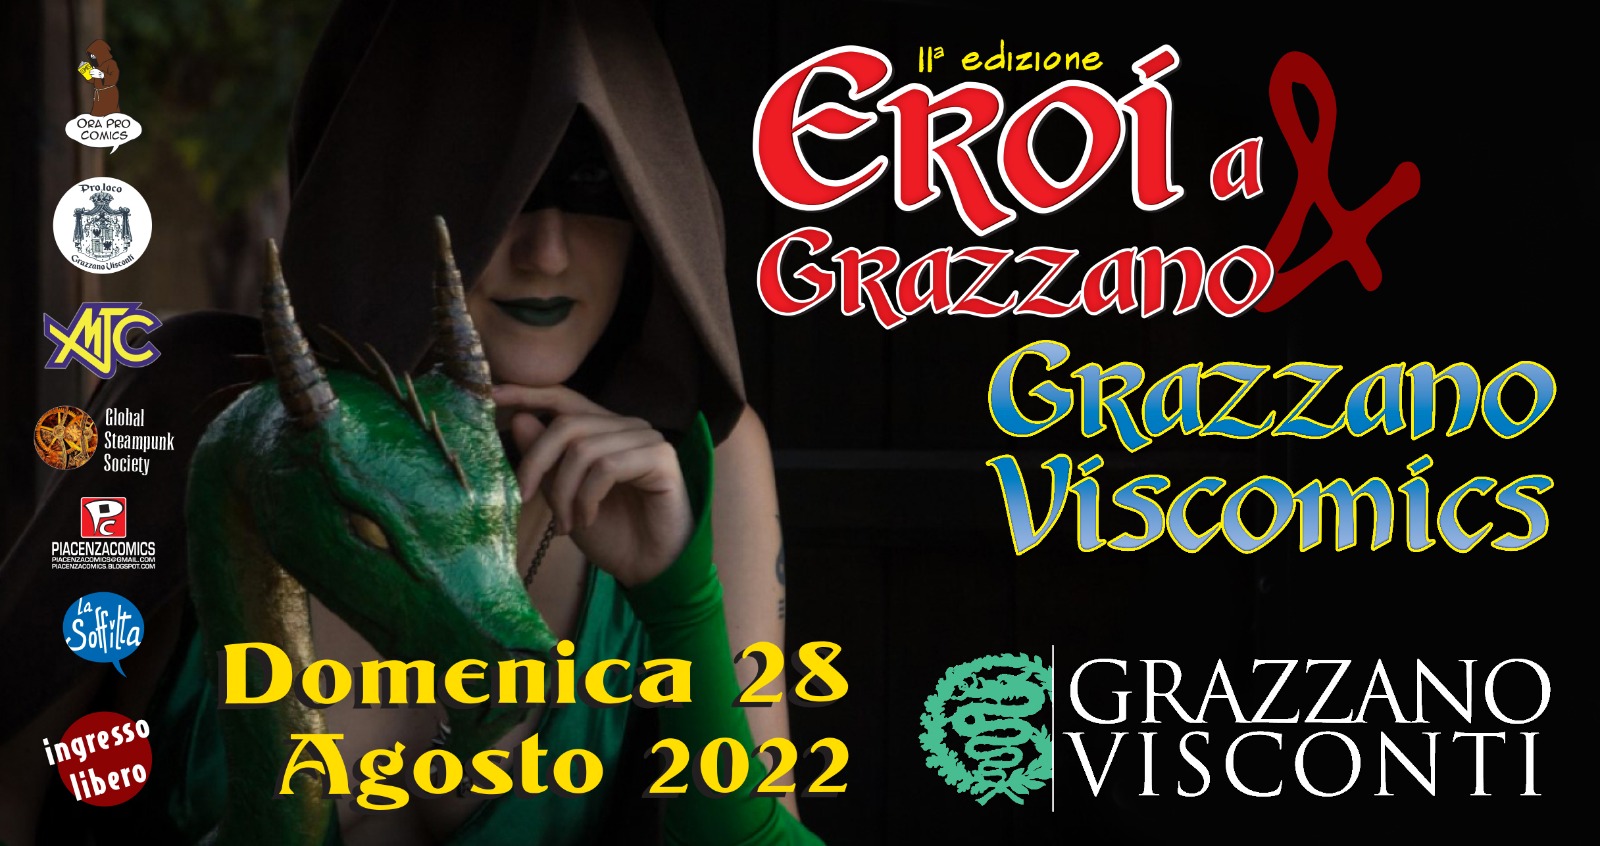 Gli Eroi ritornano a Grazzano Viscomics il 28 agosto 2022